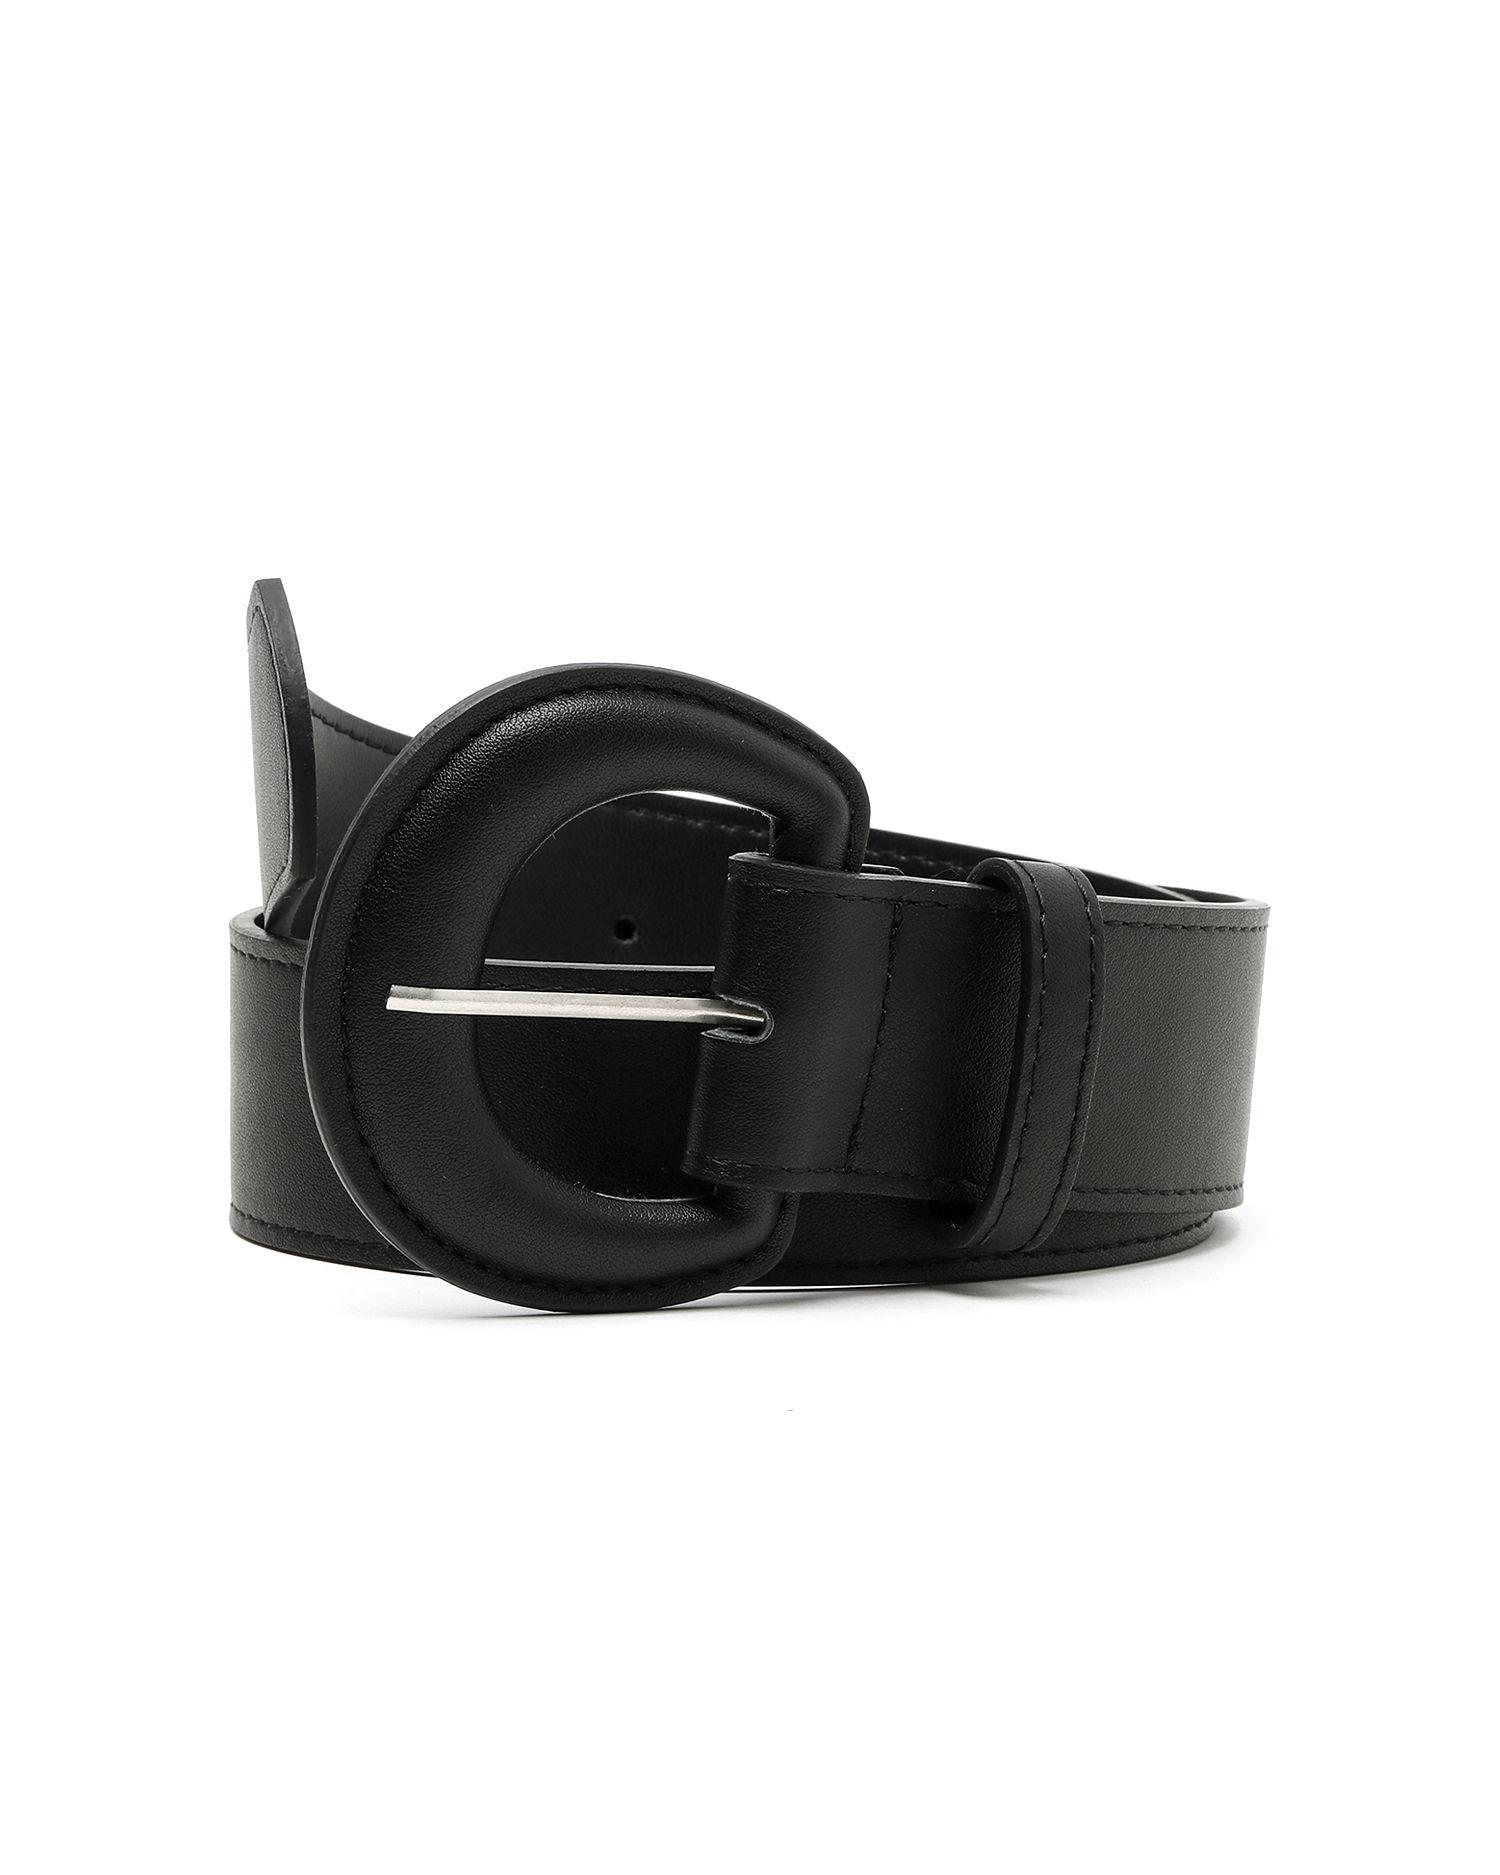 Basic buckle belt by EMODA